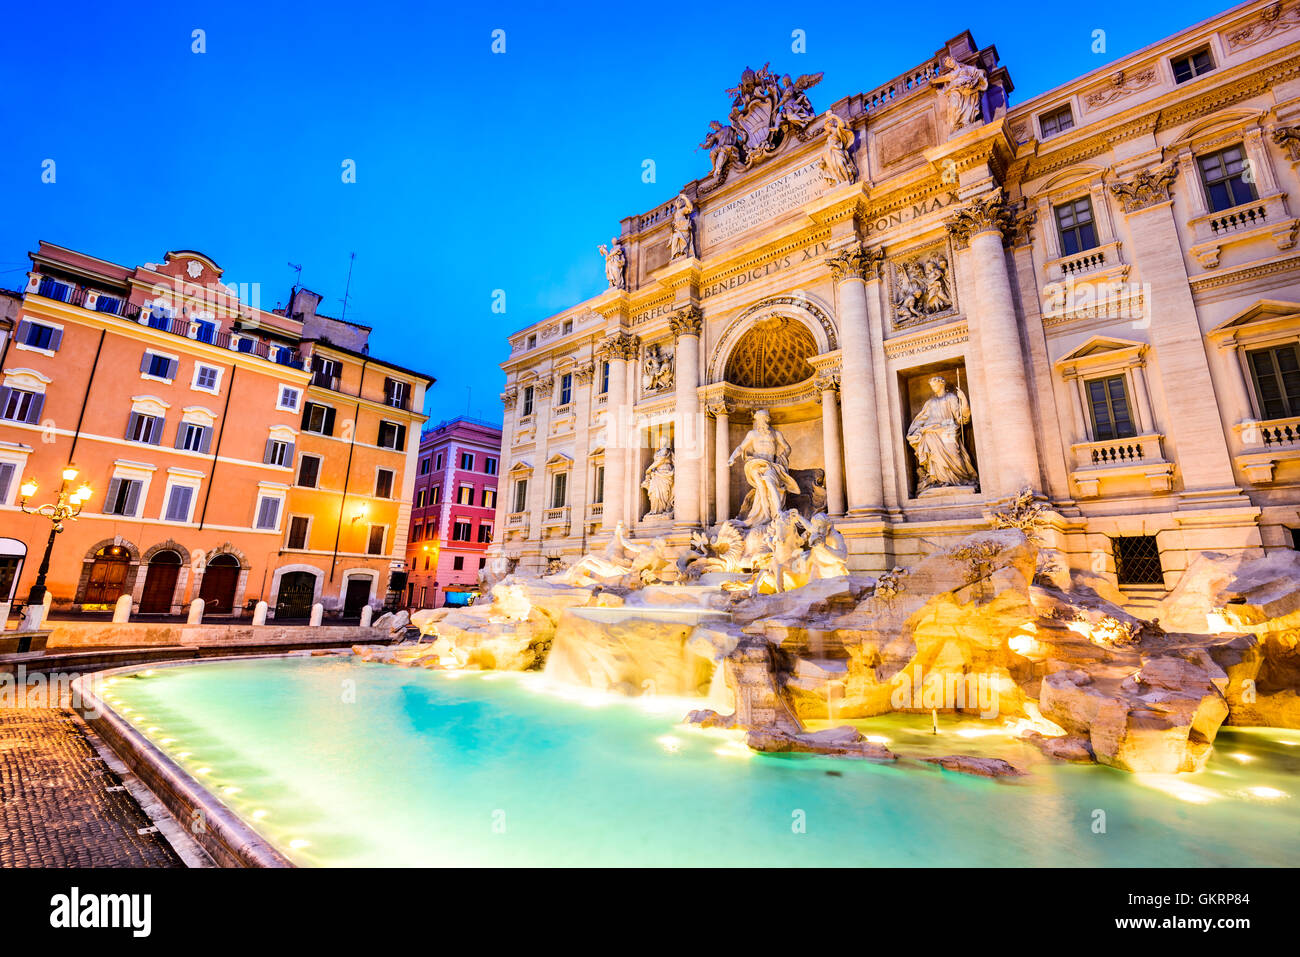 Roma, Italia. Impresionantemente ornamentado Fontana de Trevi y el Palacio de Poli (1762) iluminados por la noche en el corazón de Roma. Foto de stock